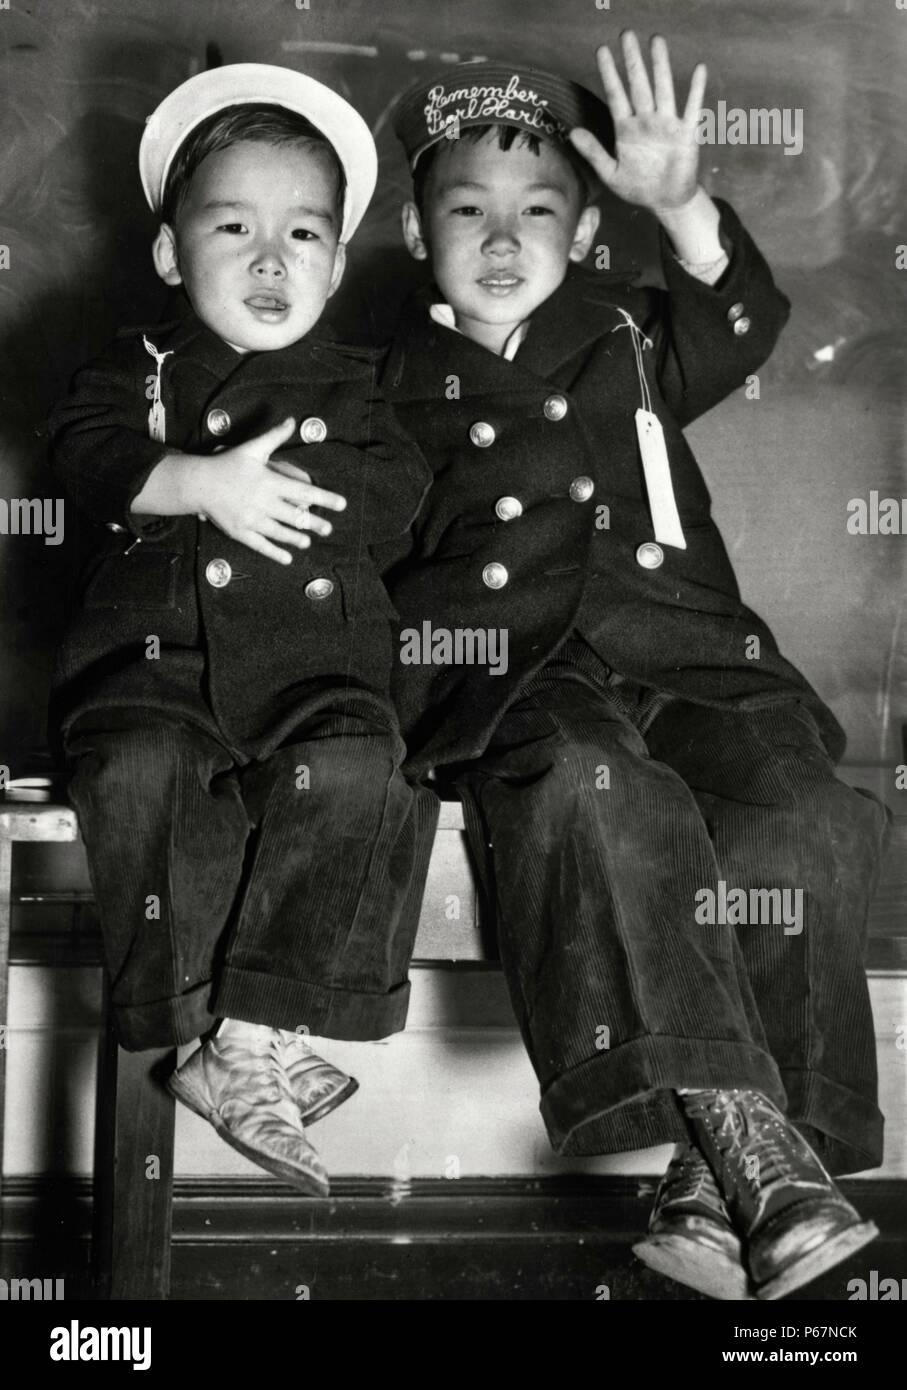 La imagen muestra dos niños japoneses esperando el autobús. Uno de los hat del niño lee "Remember Pearl Harbor". El sombrero del otro niño lee 'Wave Good-bye". Tomada en San Francisco, fechada alrededor de 1942. Foto de stock